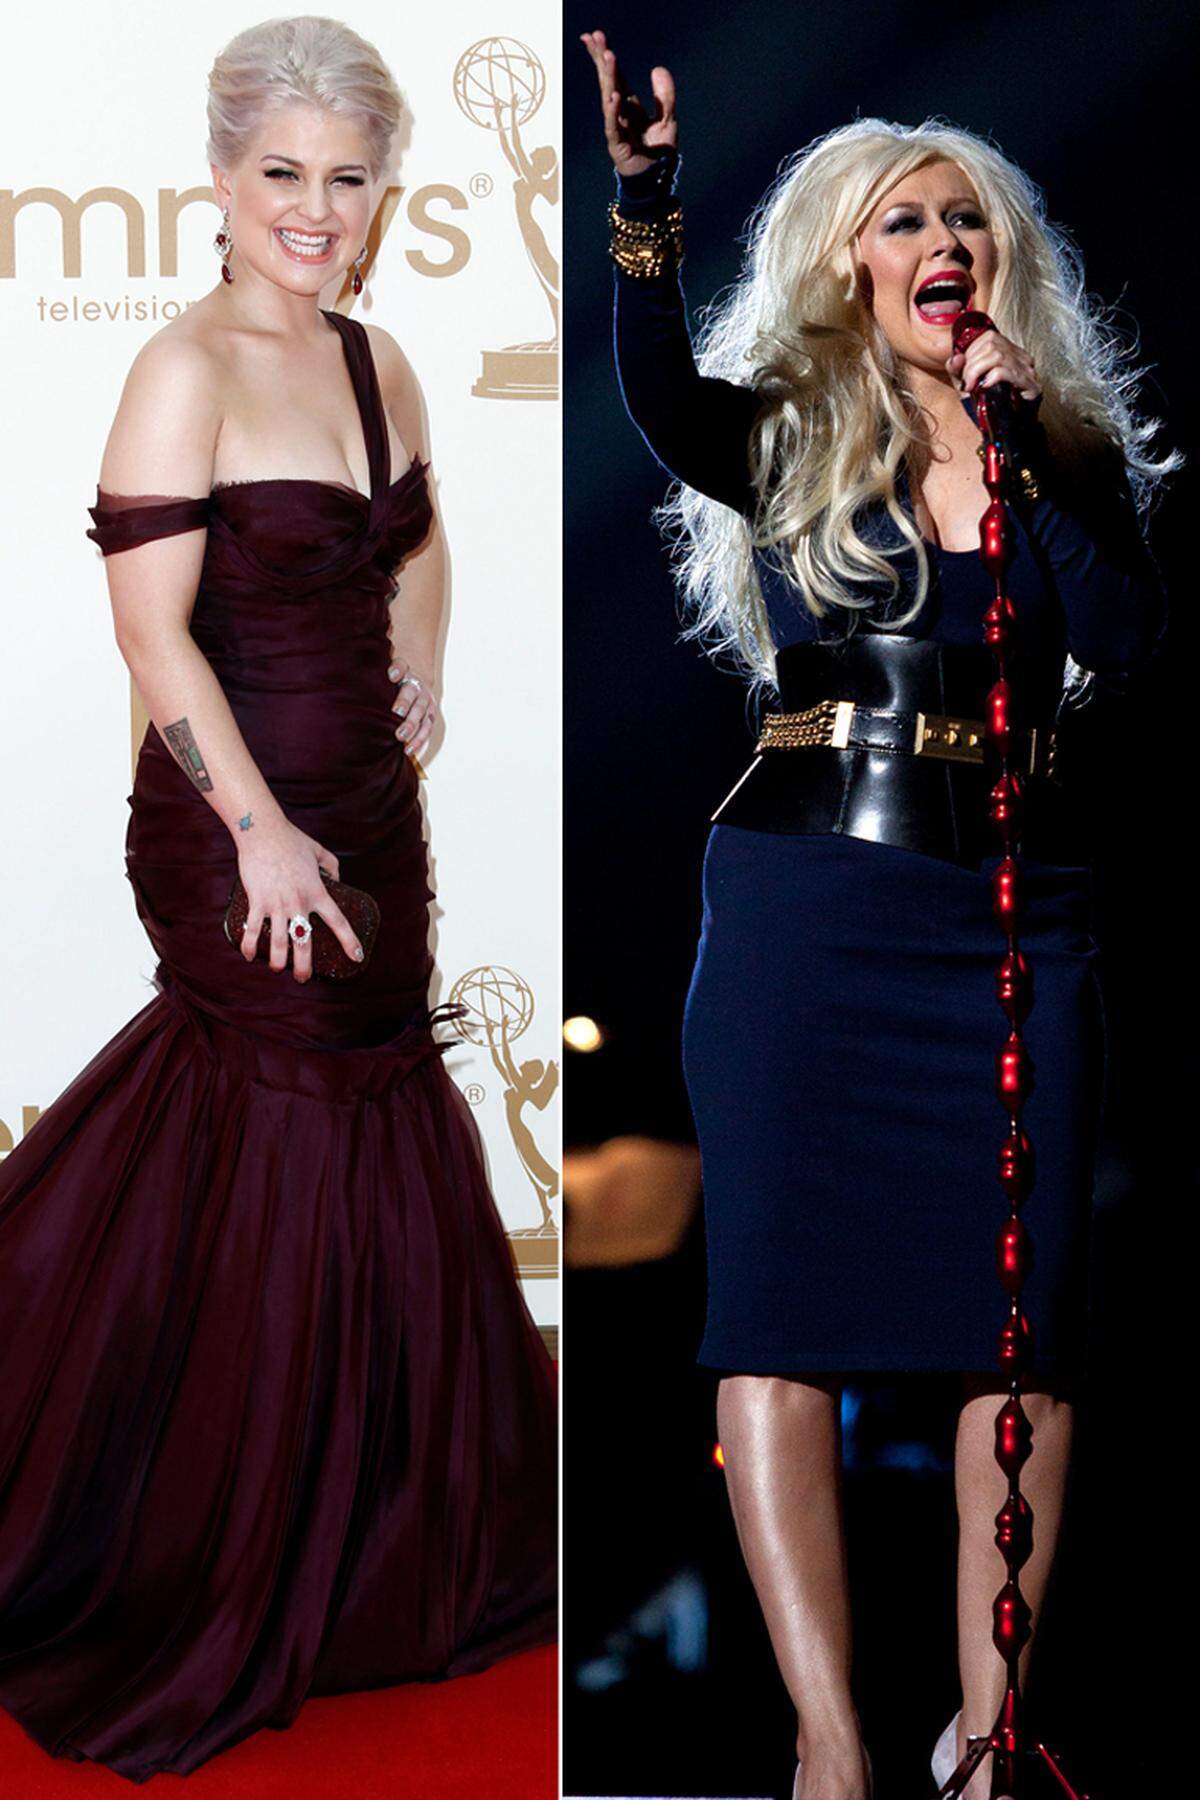 Sängerin Kelly Osbourne (26) hat sich an ihrer Kollegin Christina Aguilera (30) gerächt. "Sie hat mich jahrelang fett genannt, aber so fett war ich nie", sagte die ehemals pummelige Tochter von Rocker Ozzy Osbourne der "New York Daily News". Mittlerweile hat sie selbst abgespeckt - und Aguilera ist etwas in die Breite gewachsen.